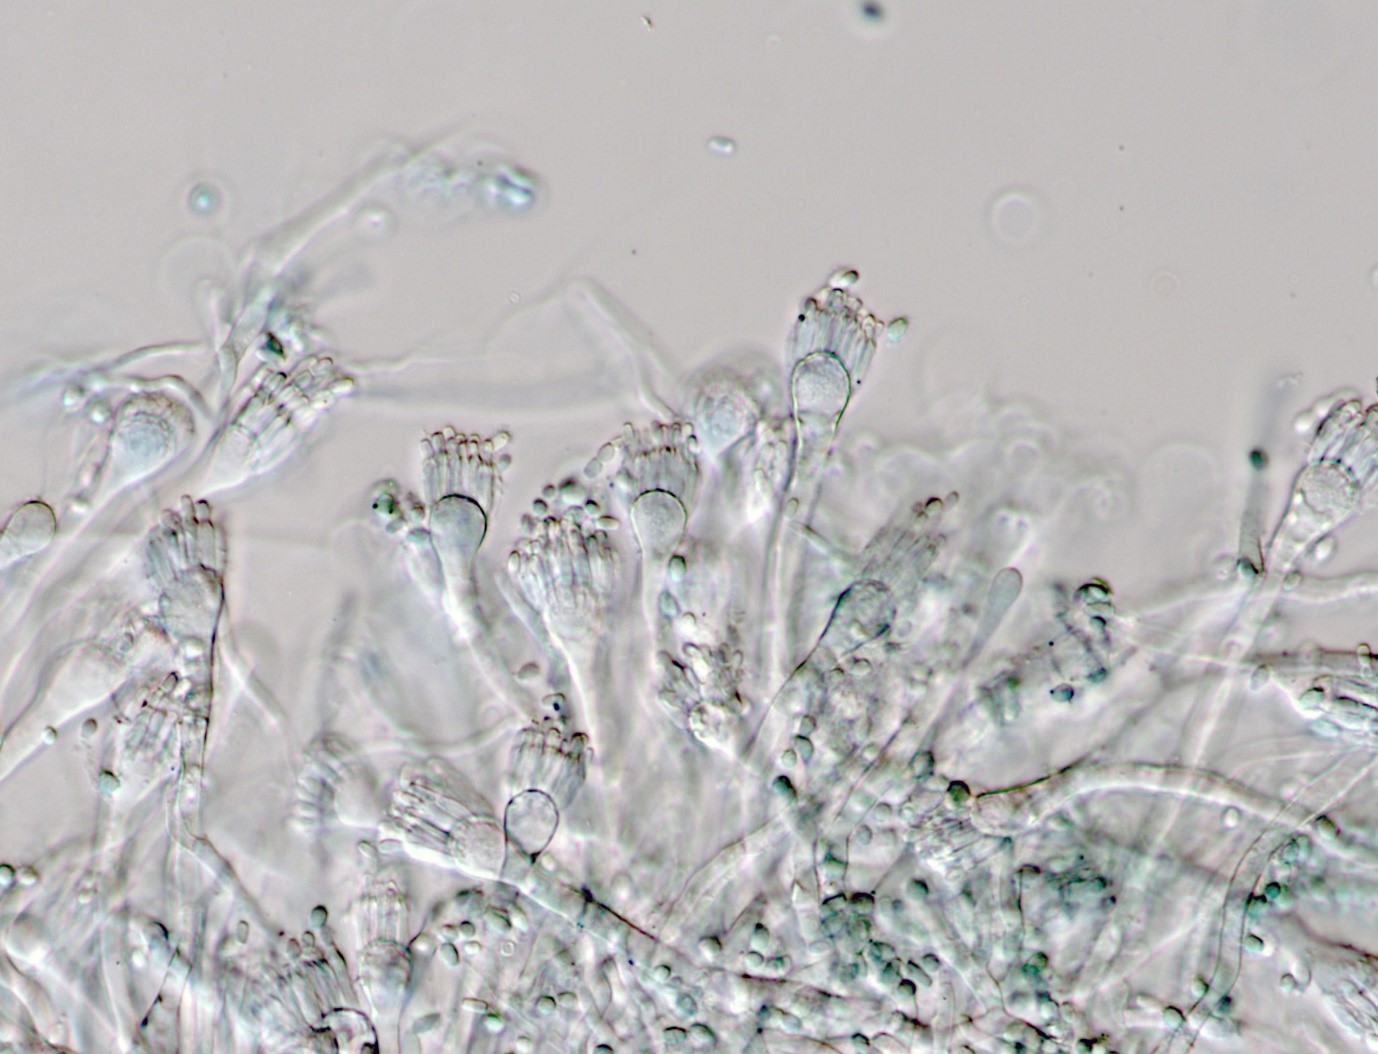 Aspergillus restrictus conidiophores